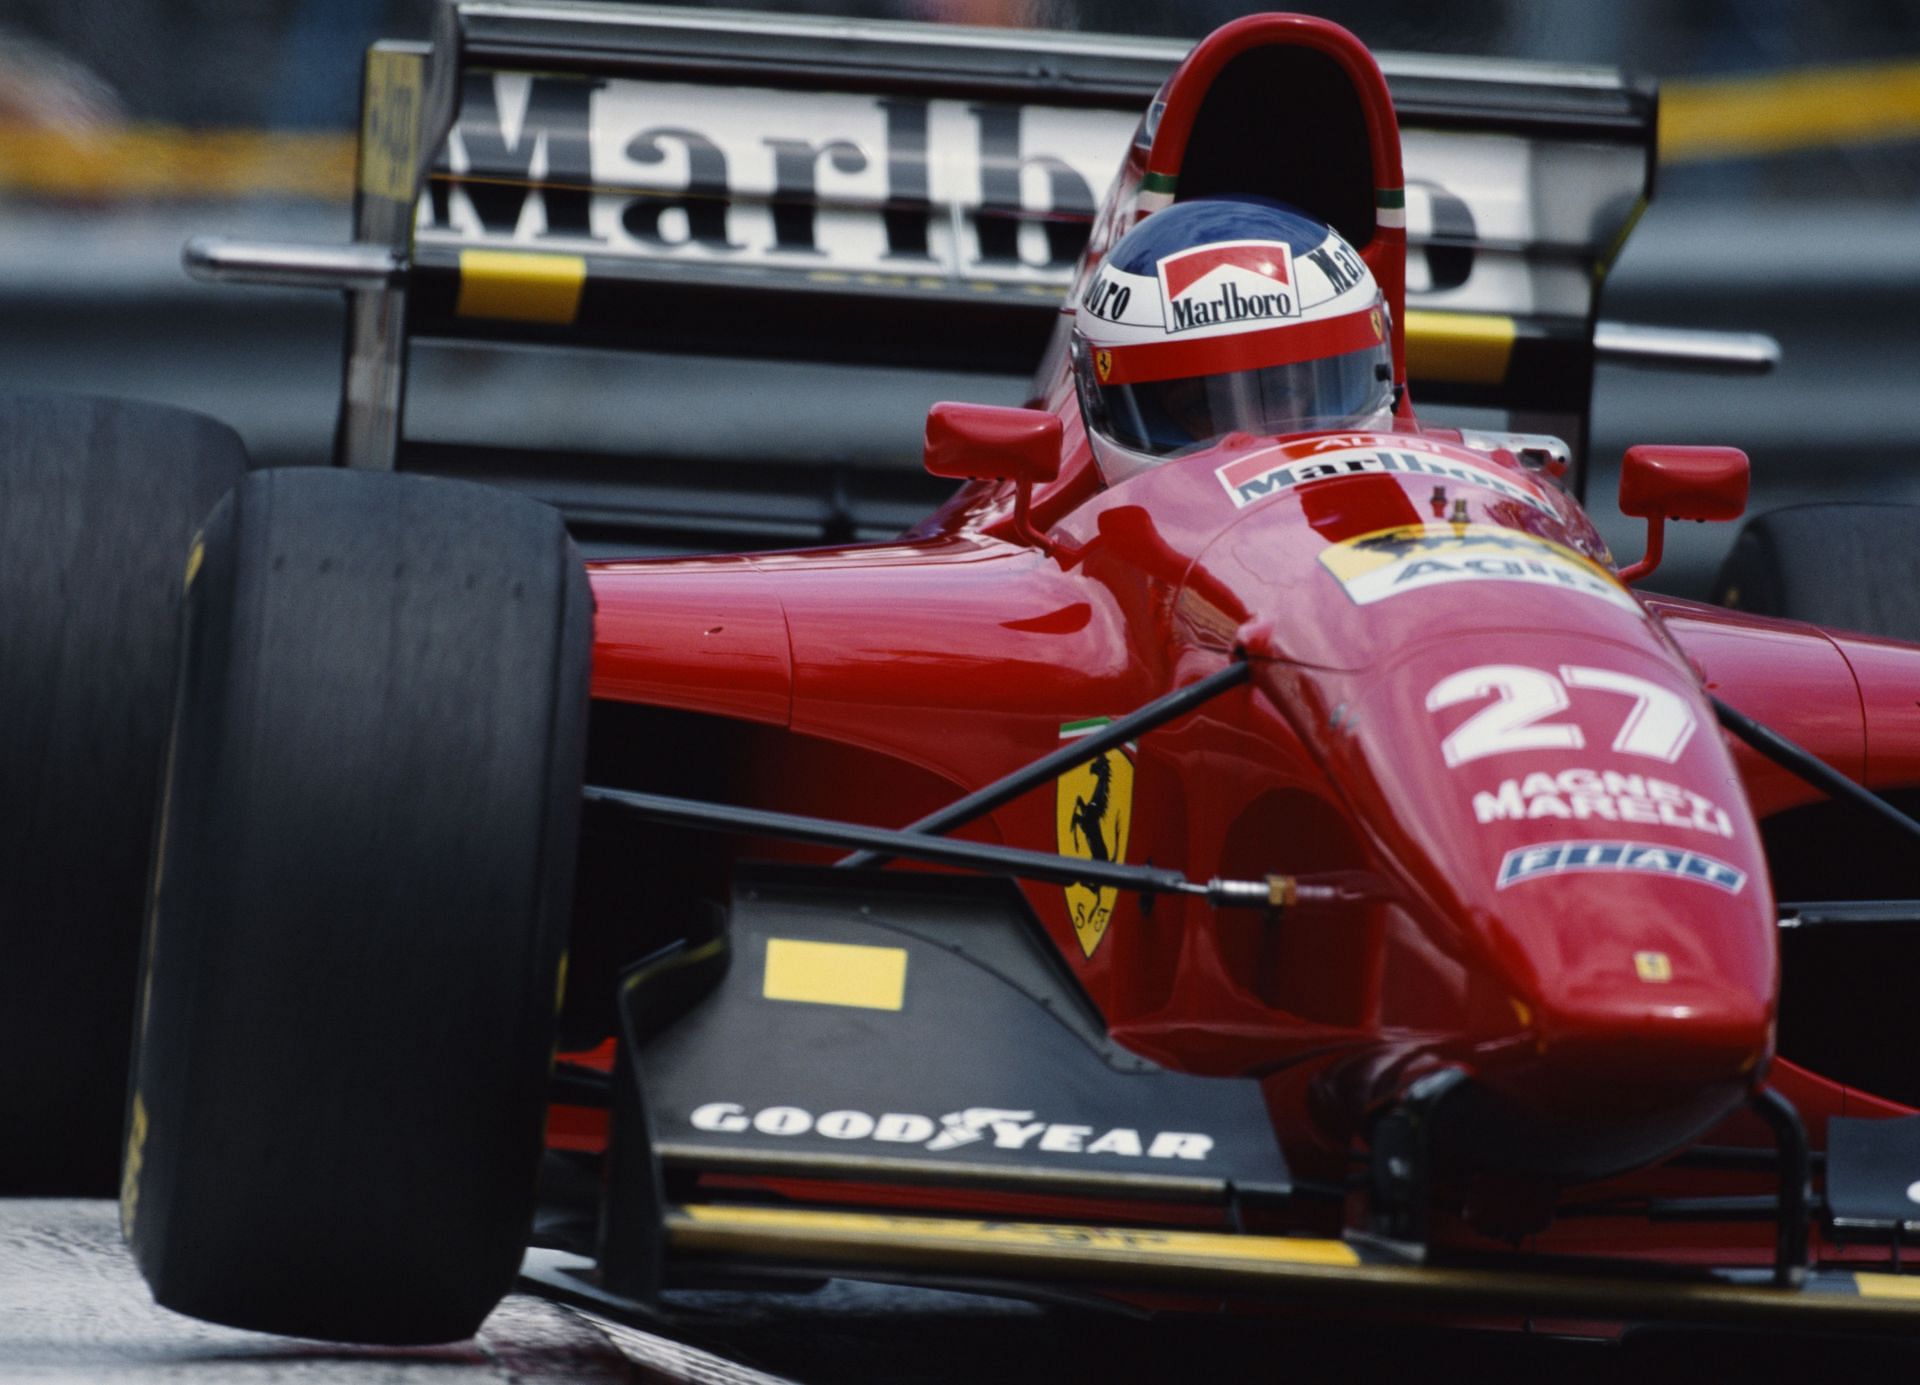 Grand Prix of Monaco - Jean Alesi drives the red car in Monte Carlo.